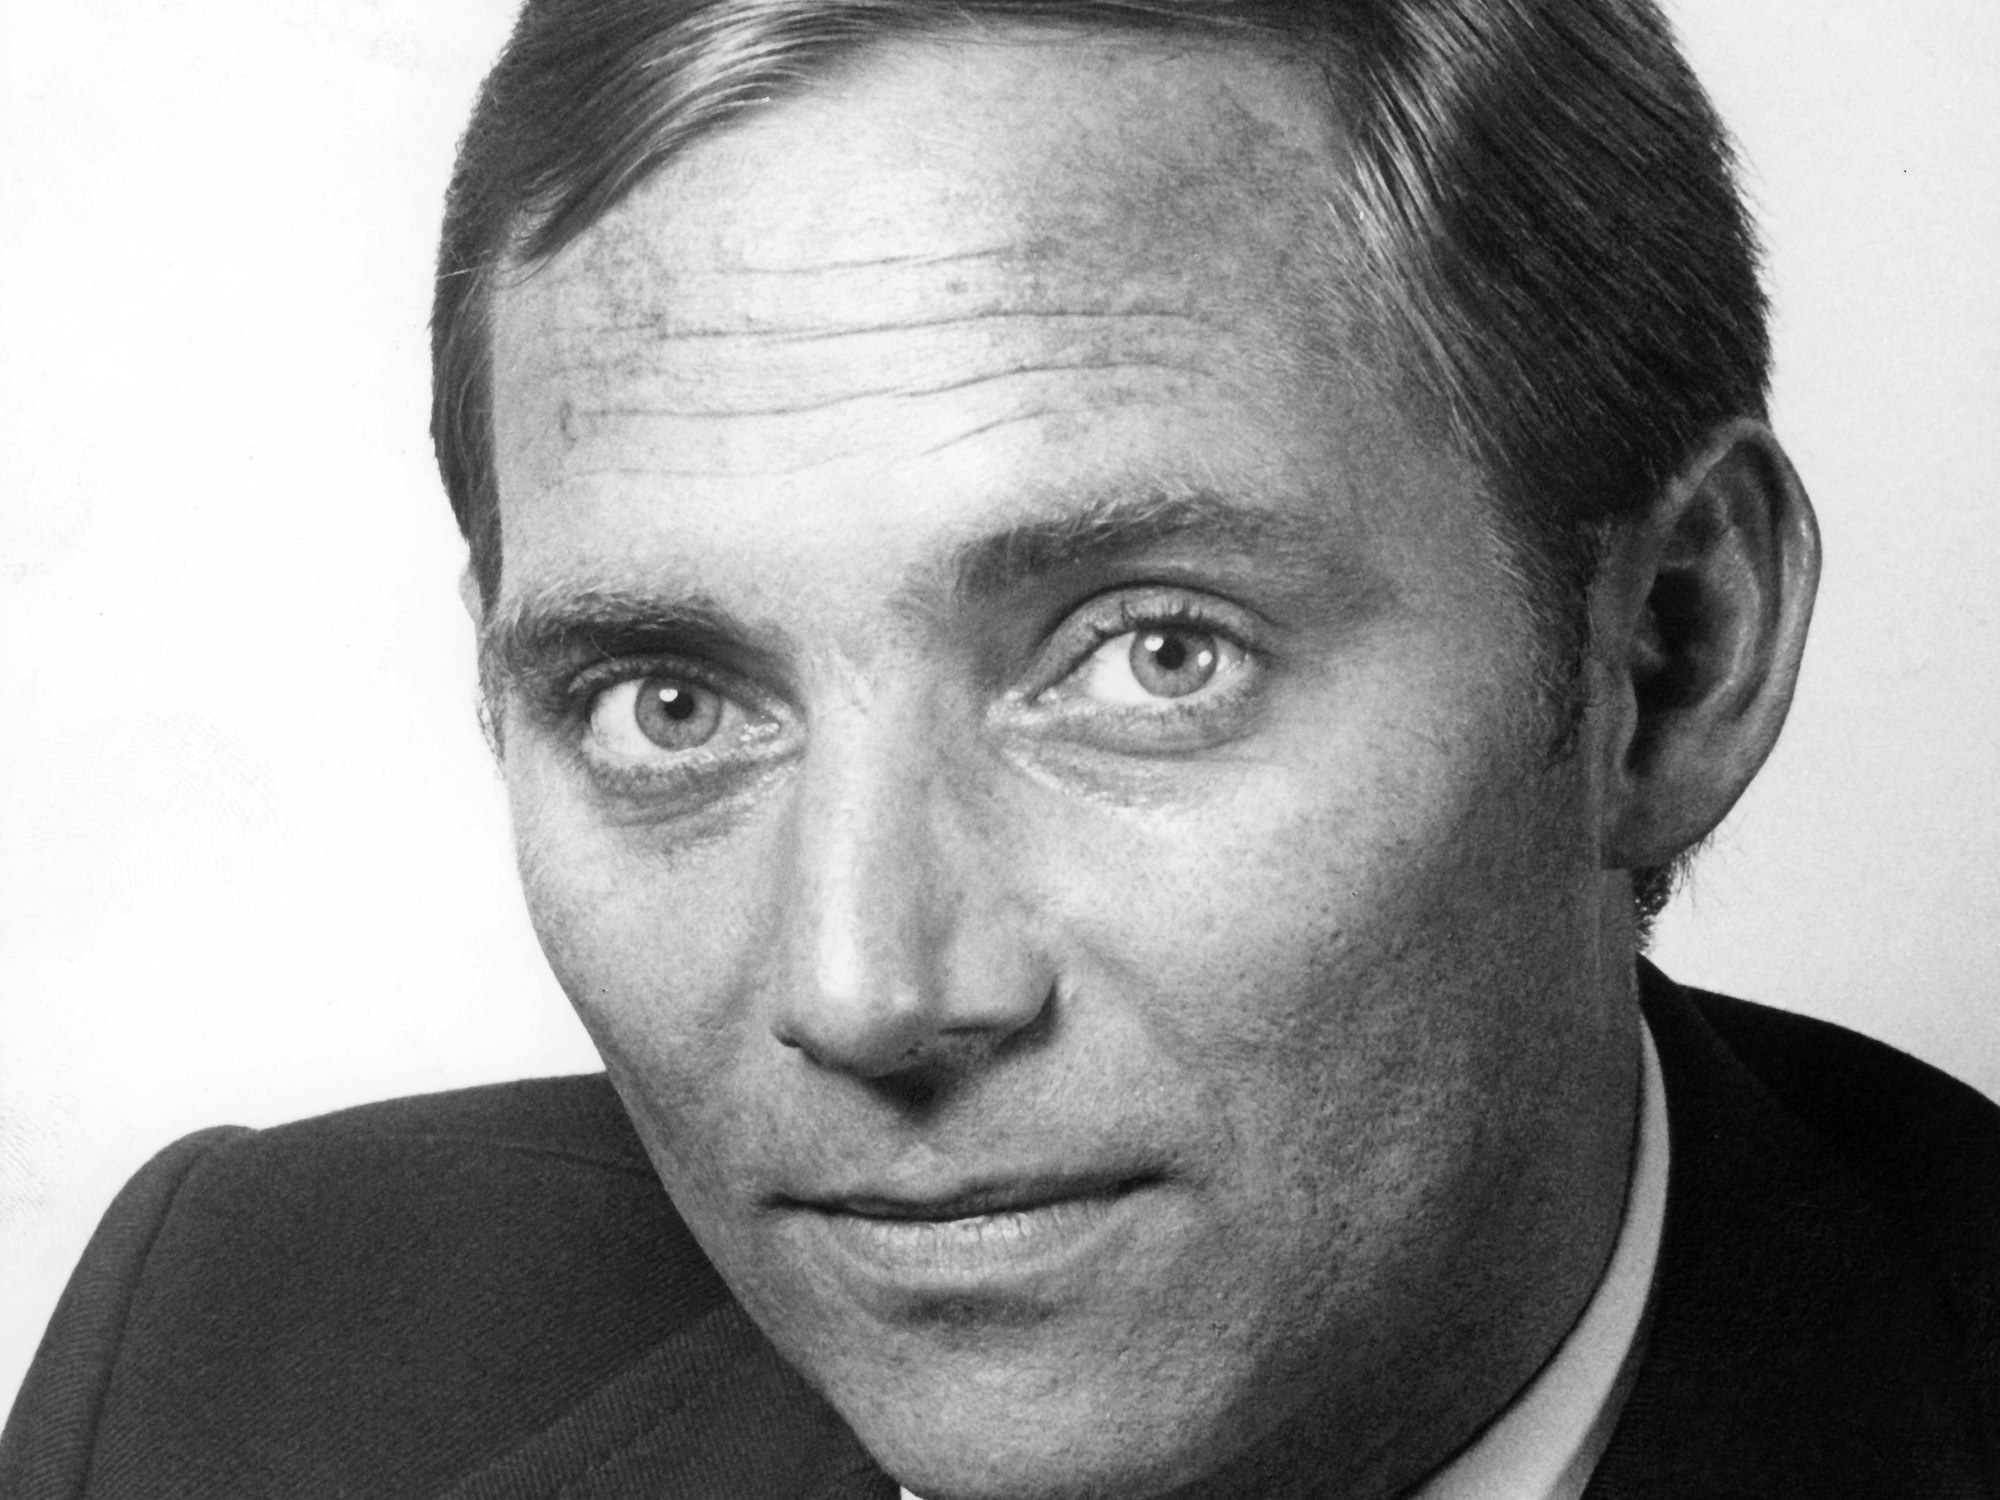 Porträt des CDU-Politikers Wolfgang Schäuble aus dem Jahre 1975.